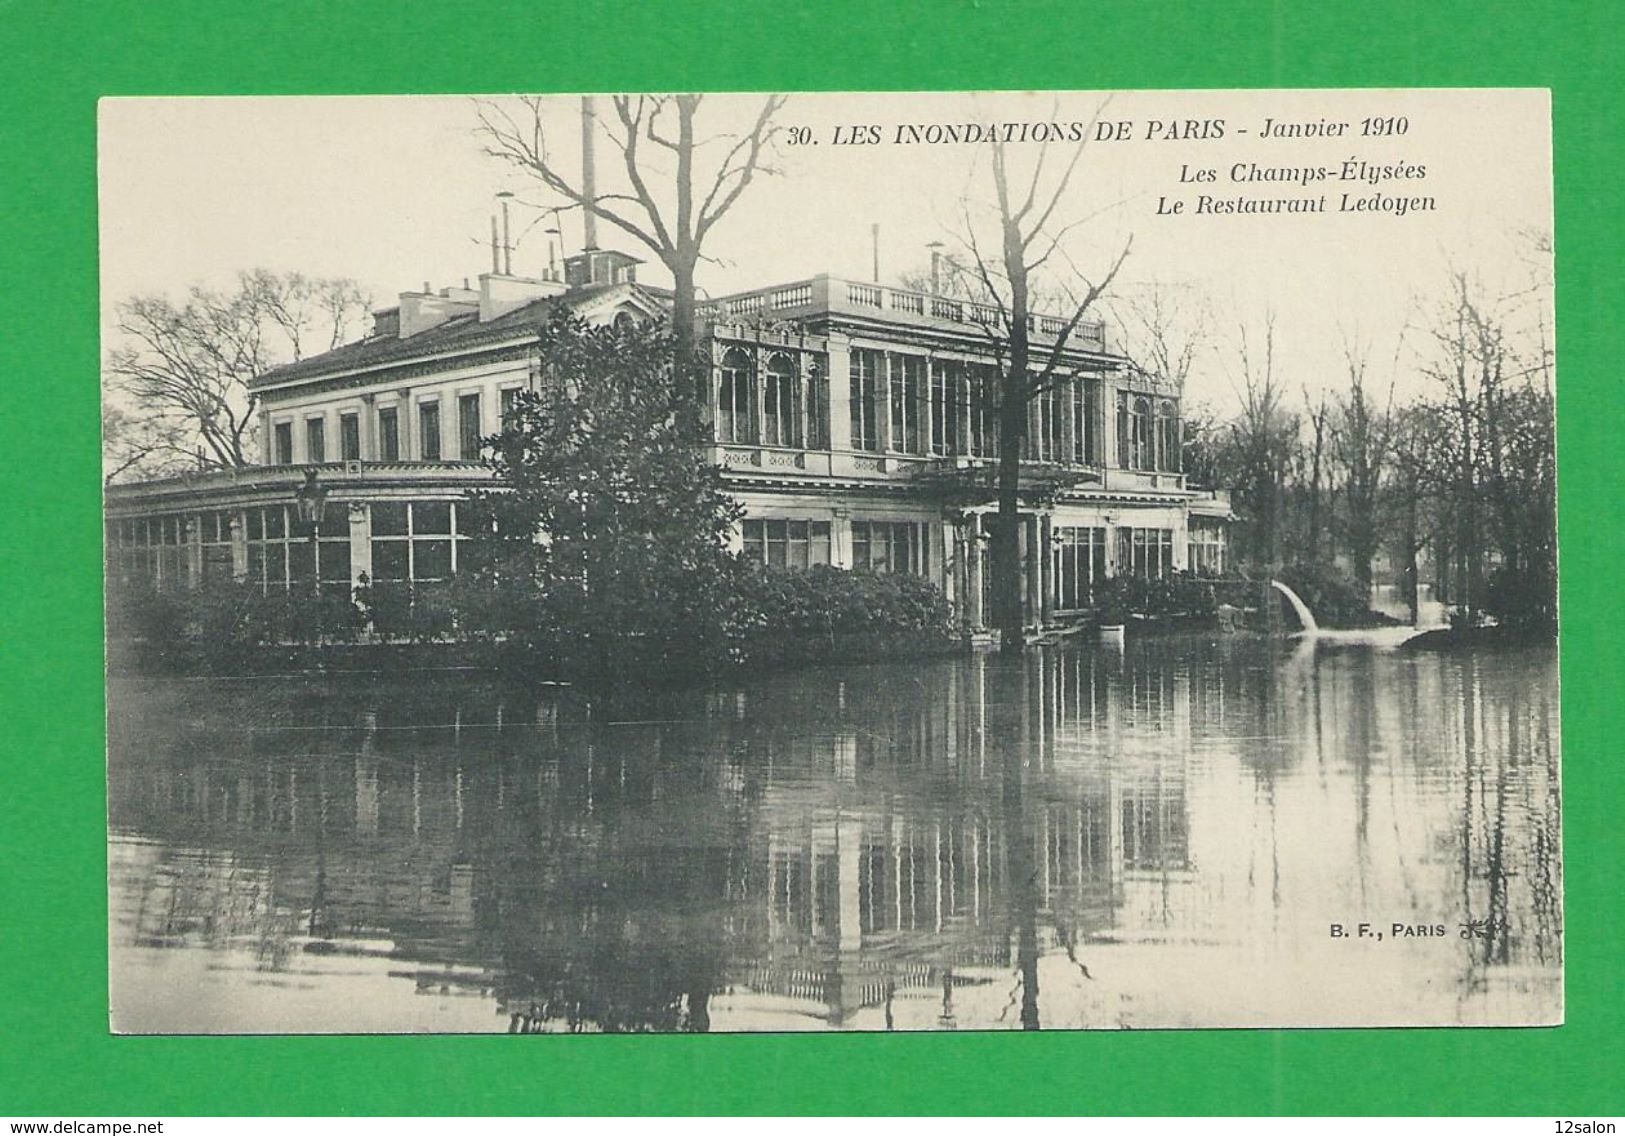 Cartes Postales 75 PARIS INONDATIONS DE 1910 Les Champs Elysées Restaurant Ledoyen - Inondations De 1910